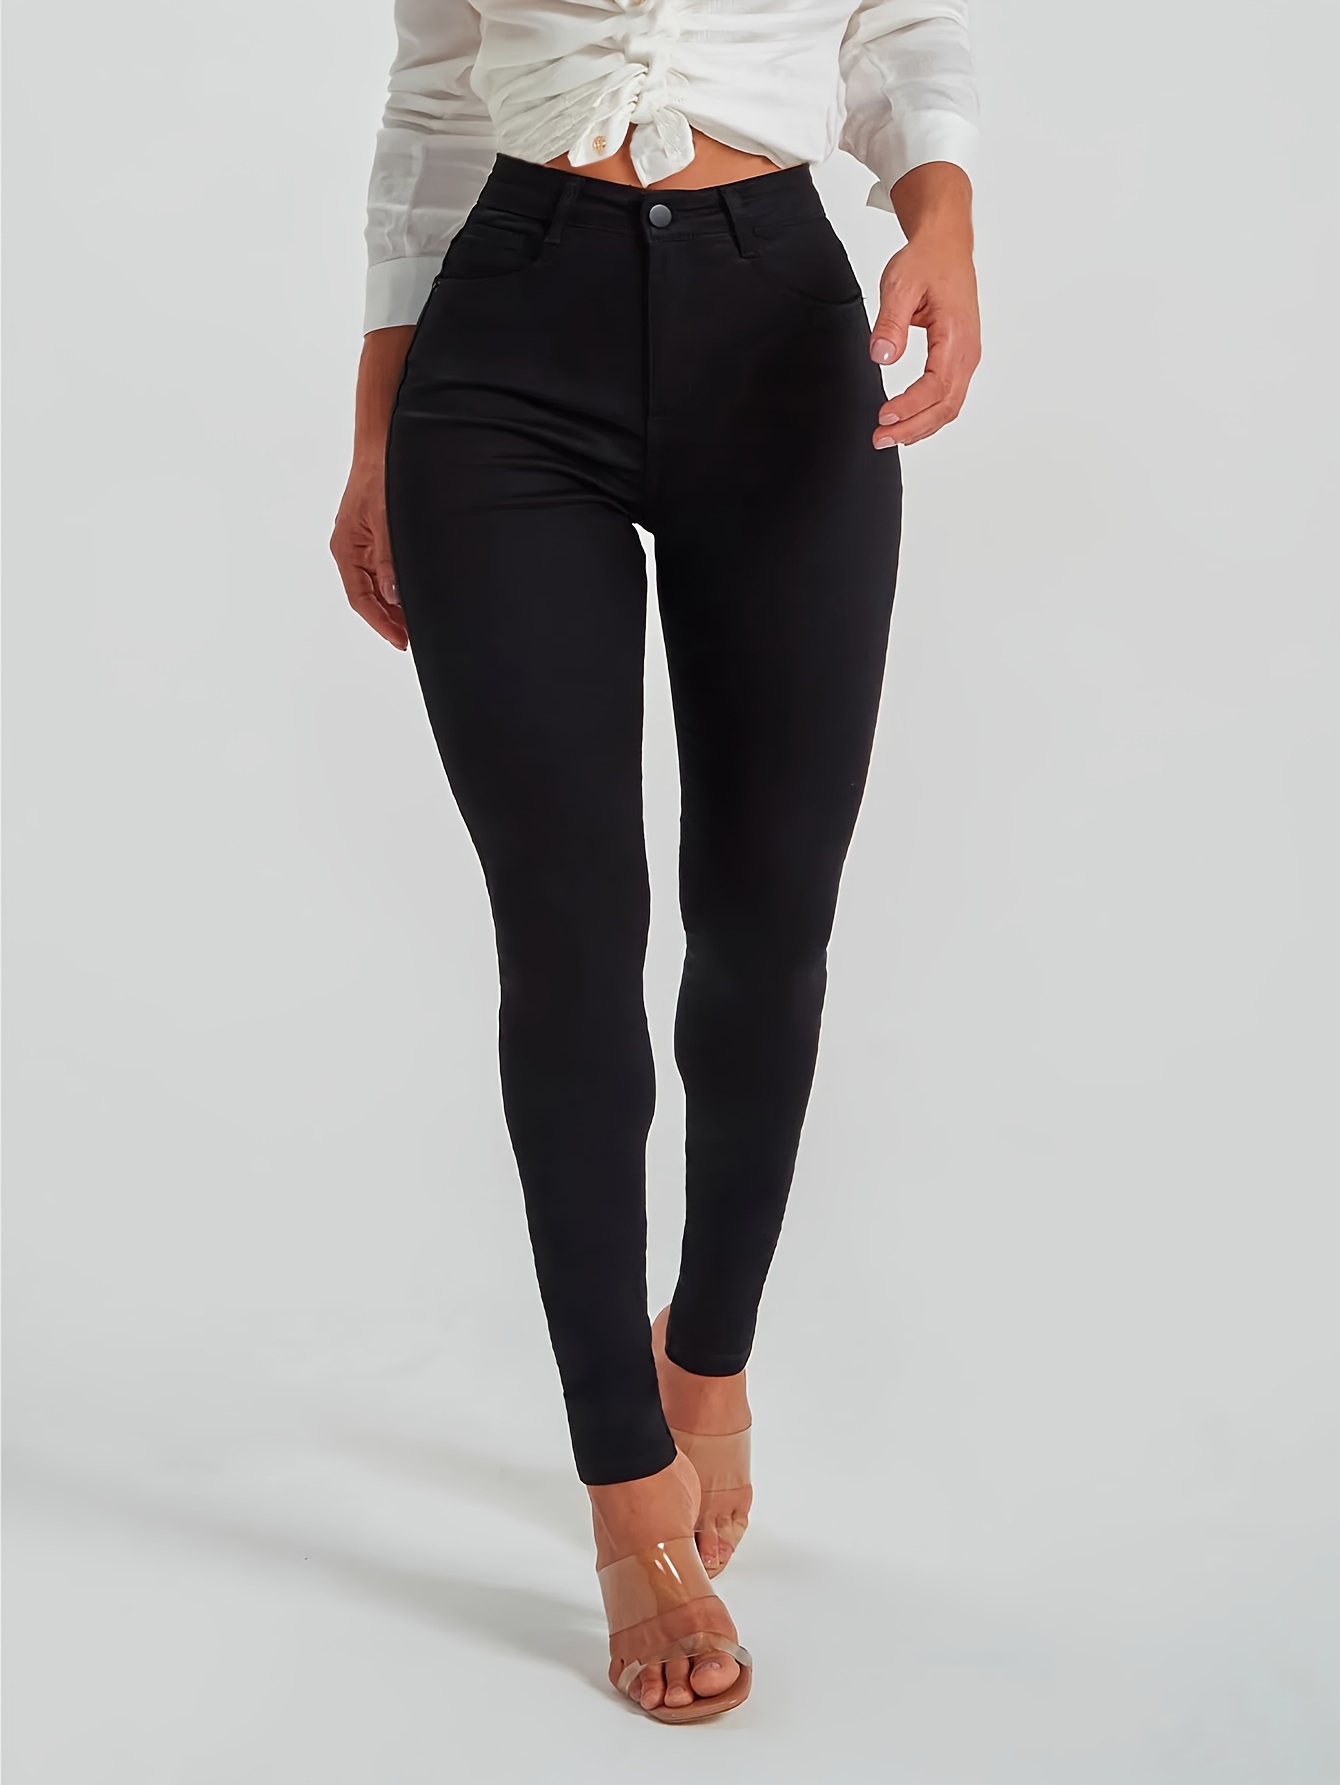 Pantalones vaqueros ajustados de color negro con dobladillo sin rematar de  tiro alto, diseño liso de cintura alta y pantalones vaqueros desgastados, p